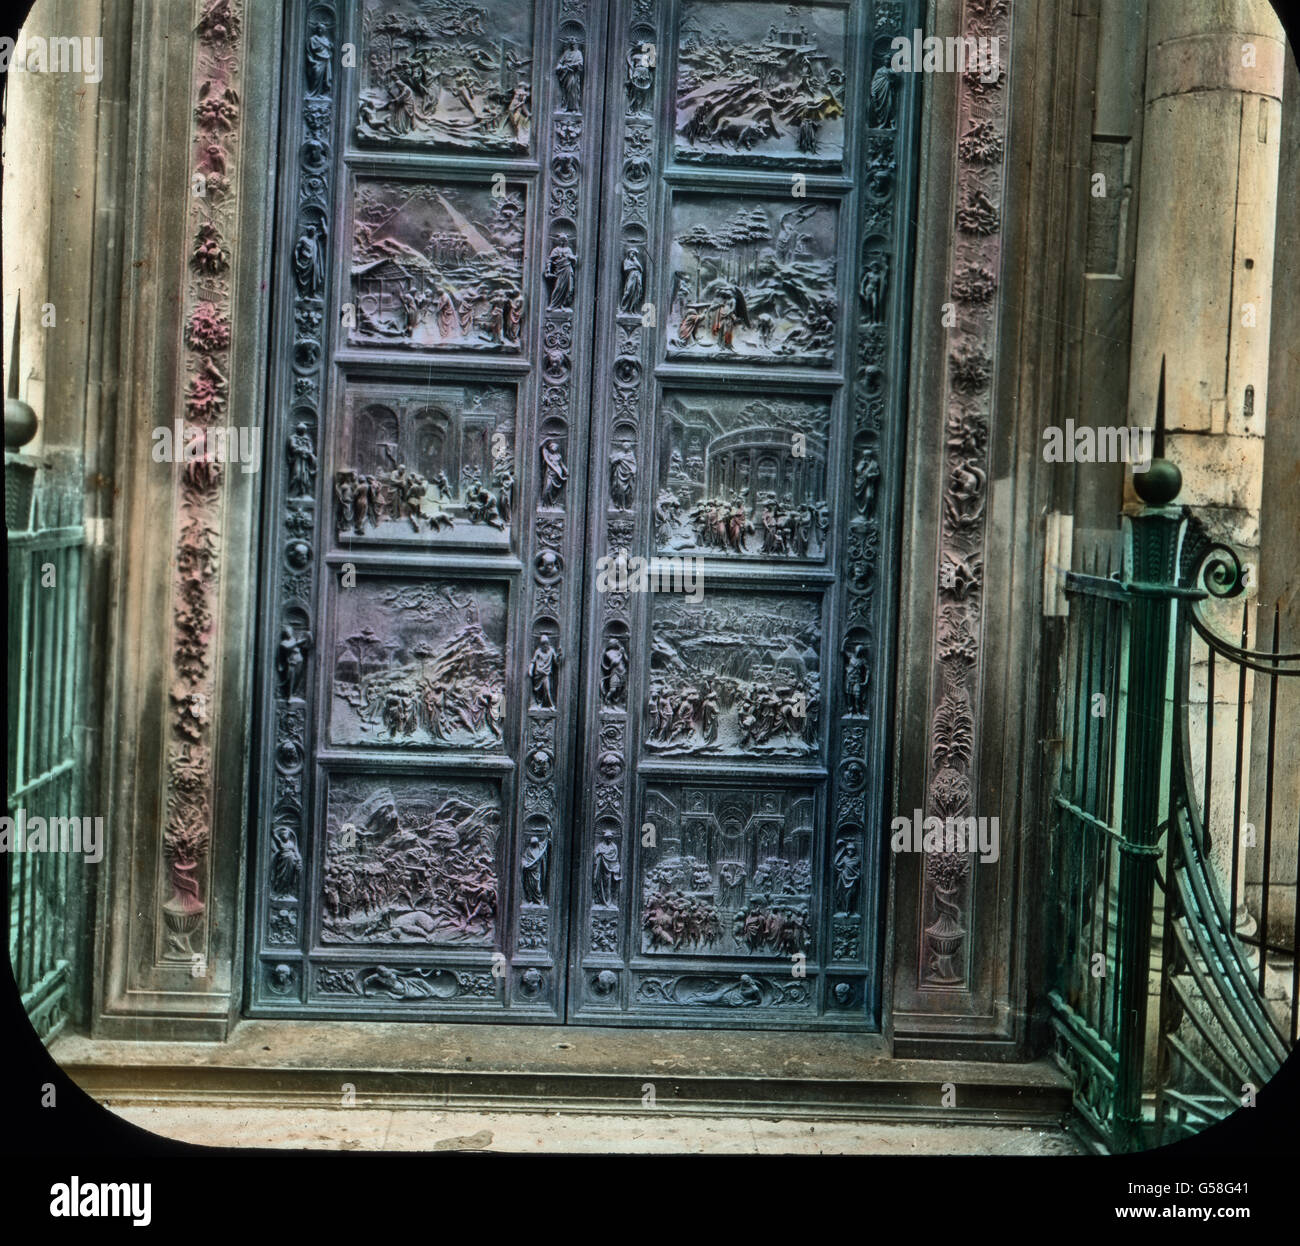 Berühmt sind die Bronzetüren von Ghiberti und Andrea Pisano. Das schönste Tor, dem Dome gegenüber, wohl das berühmteste Italiens, wurde von Michelangelo so geschätzt, dass er behauptete, es sei wert, den Eingang zu den himmlischen Gefilden zu schmücken. Es heißt seitdem allgemein das Tor des Paradieses. Die zehn Flächen der Türe bieten Darstellungen aus dem alten Testamente. Die Rahmen zeigen 20 Statue  von Propheten, zwischen denen sich 24 Büsten großer Männer jener Zeit befinden. Ghiberti hat sich salbst in einer dieser Büsten dargestellt. An den Türpfosten ranken sich in Bronze getriebene B Stock Photo